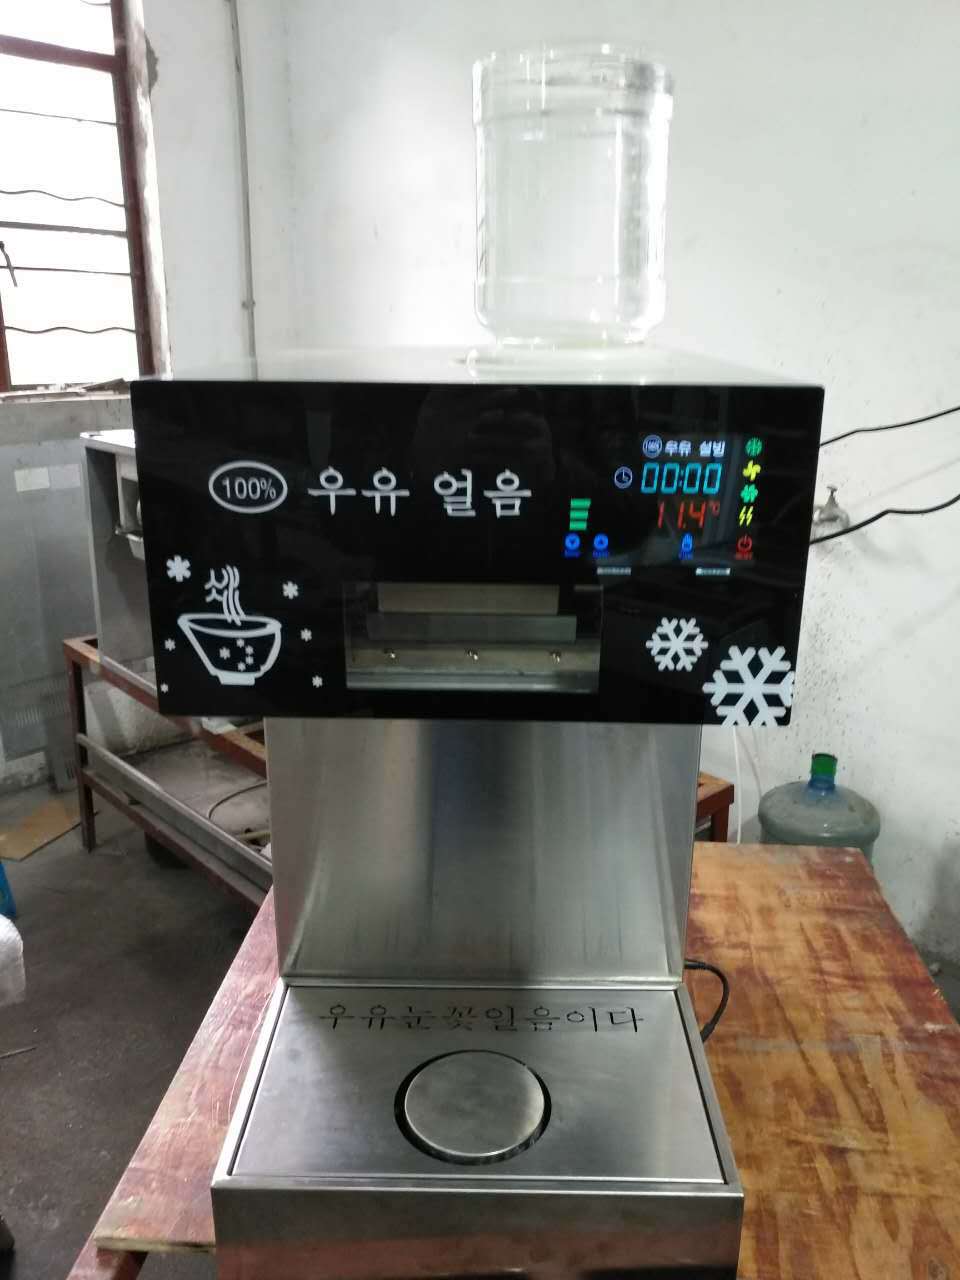 雪花冰机 韩国雪冰机进口牛奶雪花机 膨膨冰 商用制雪机雪花冰机